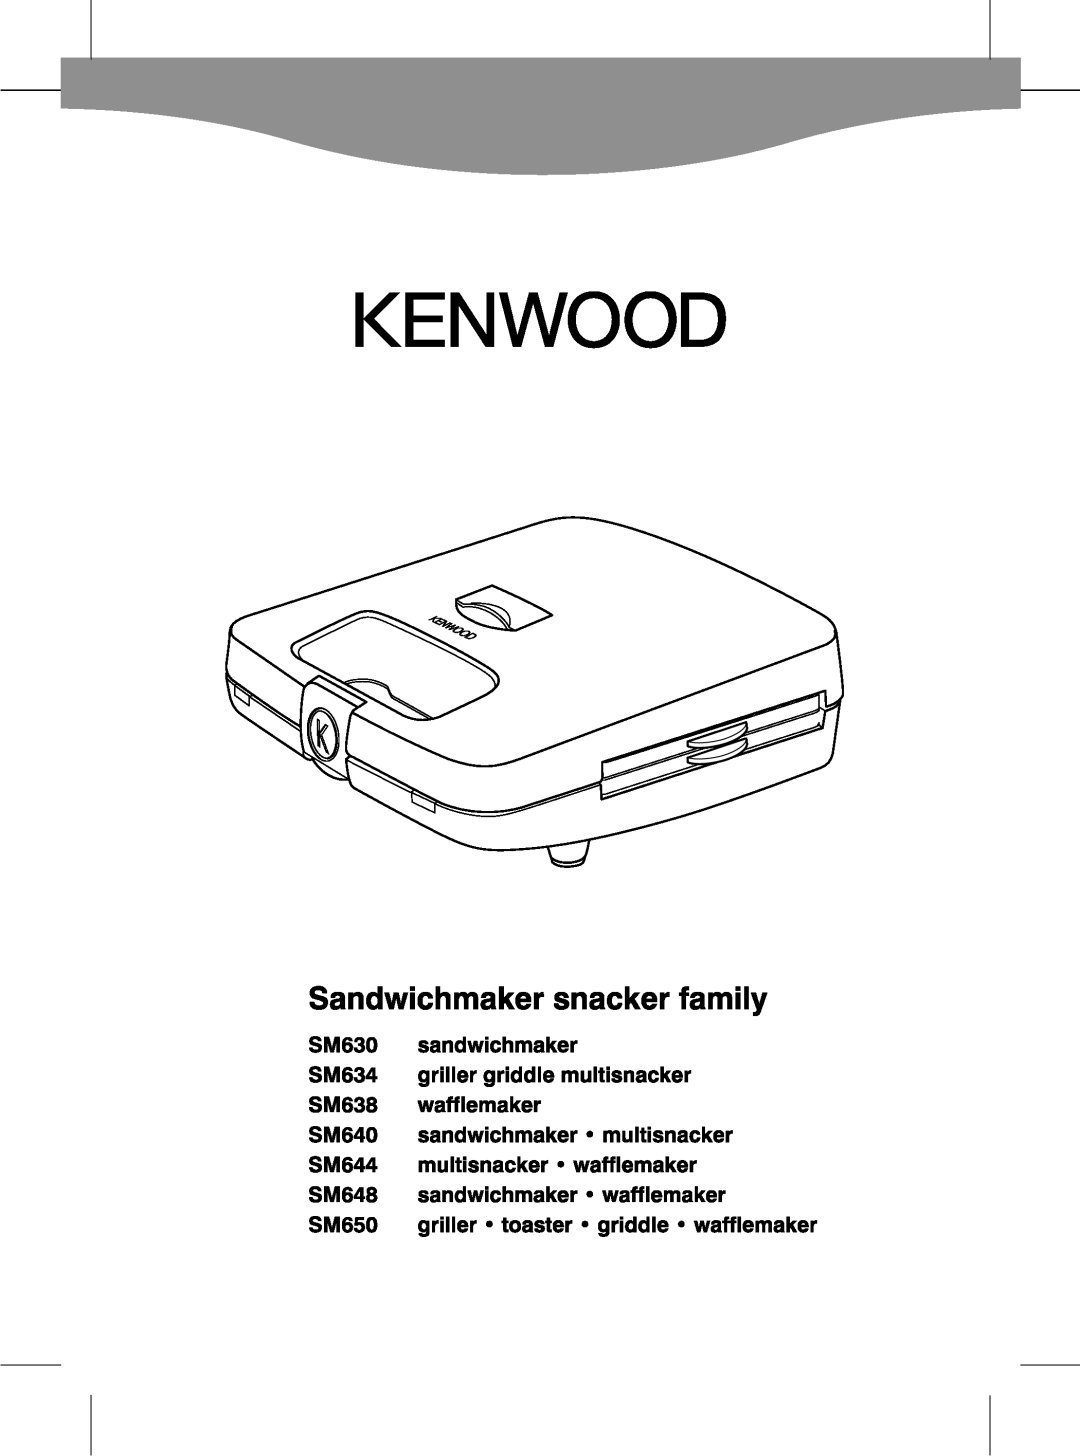 Kenwood SM640, SM638, SM644, SM630, SM648, SM650, SM634 manual 